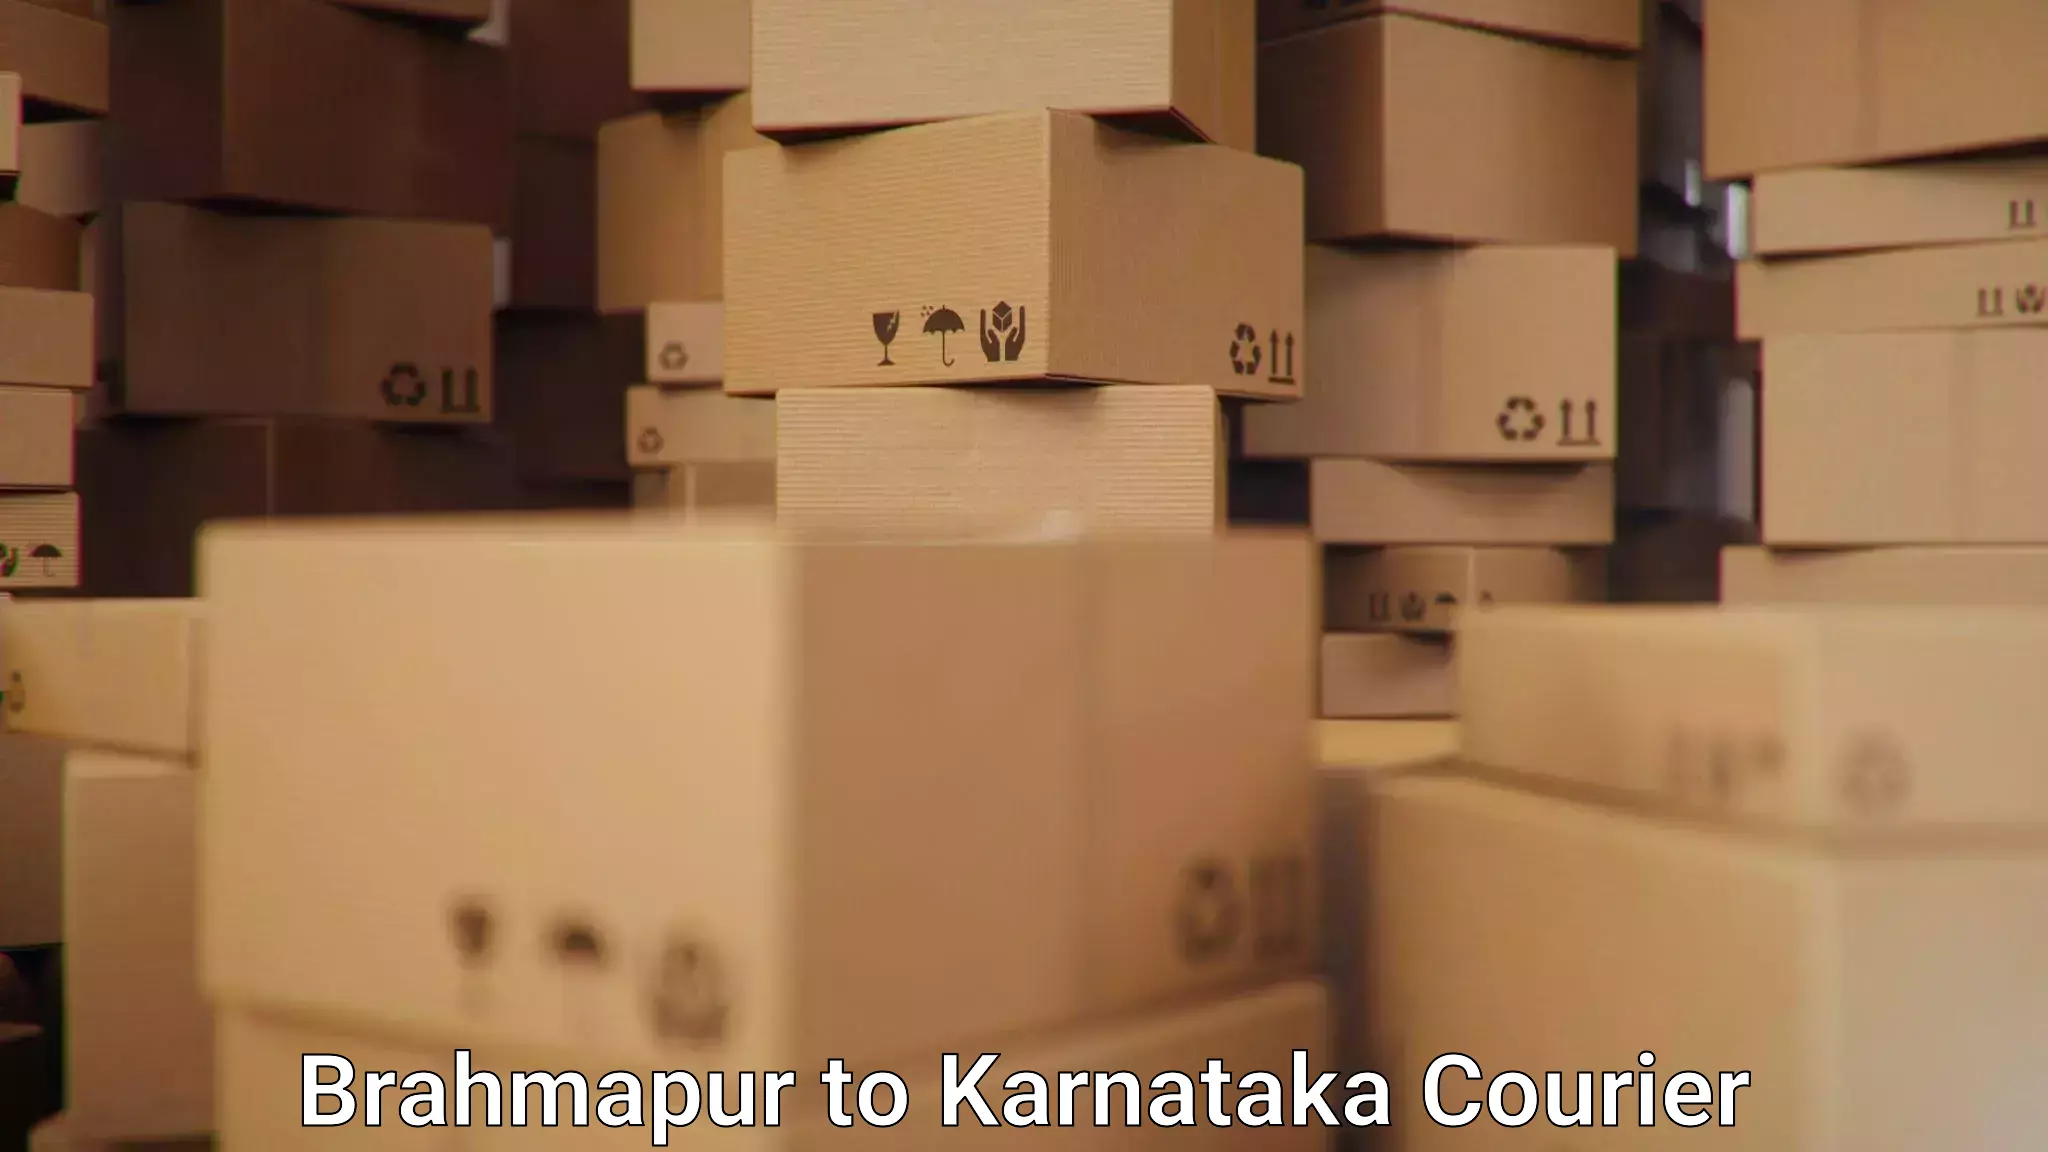 Bulk courier orders Brahmapur to Lingasugur